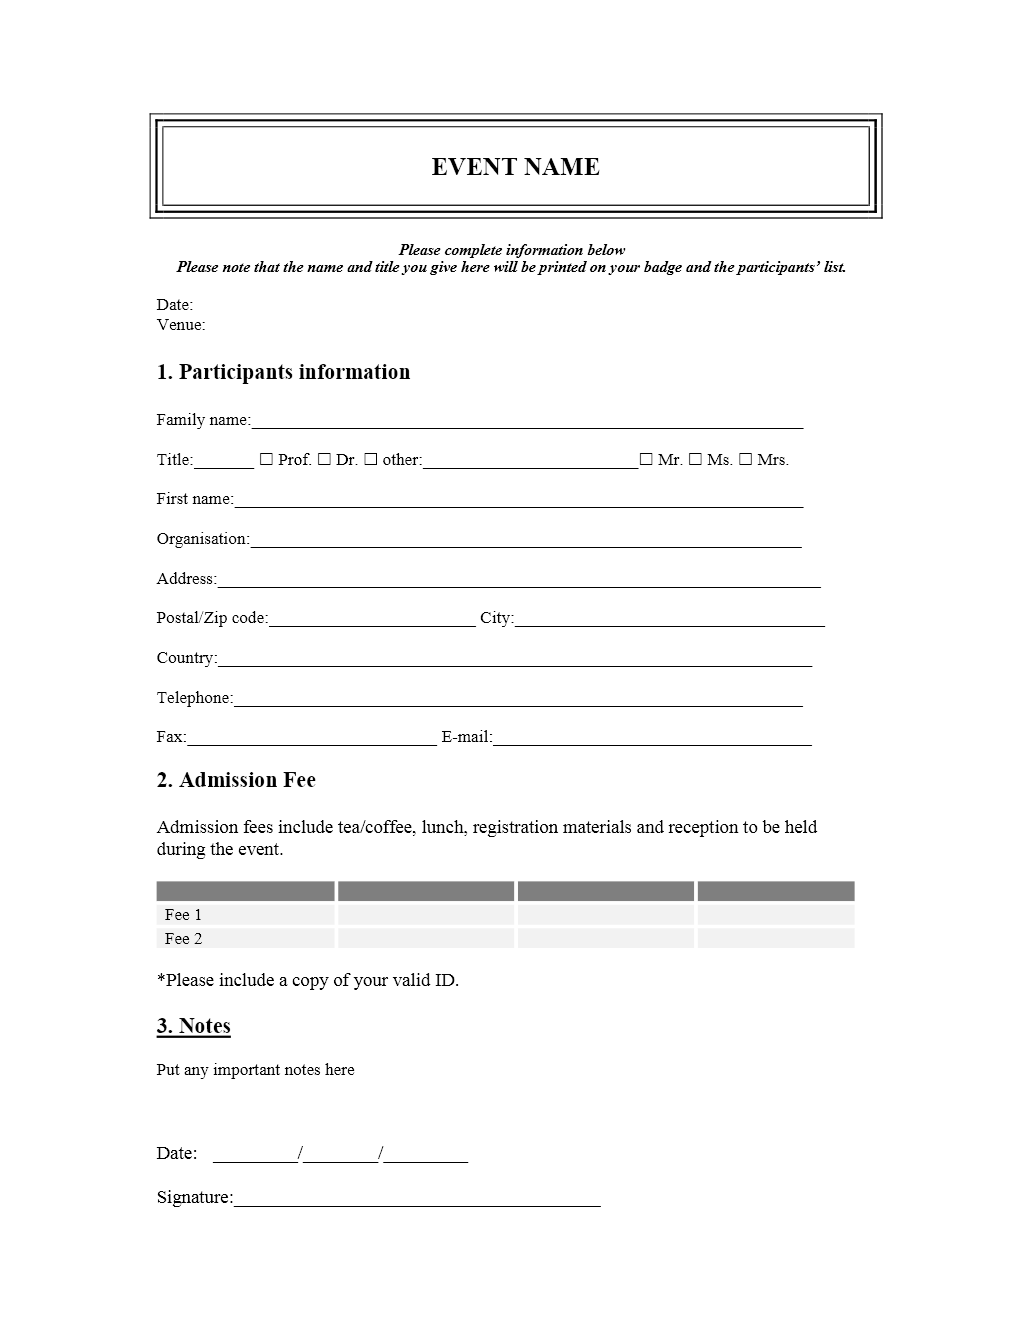 event-registration-form